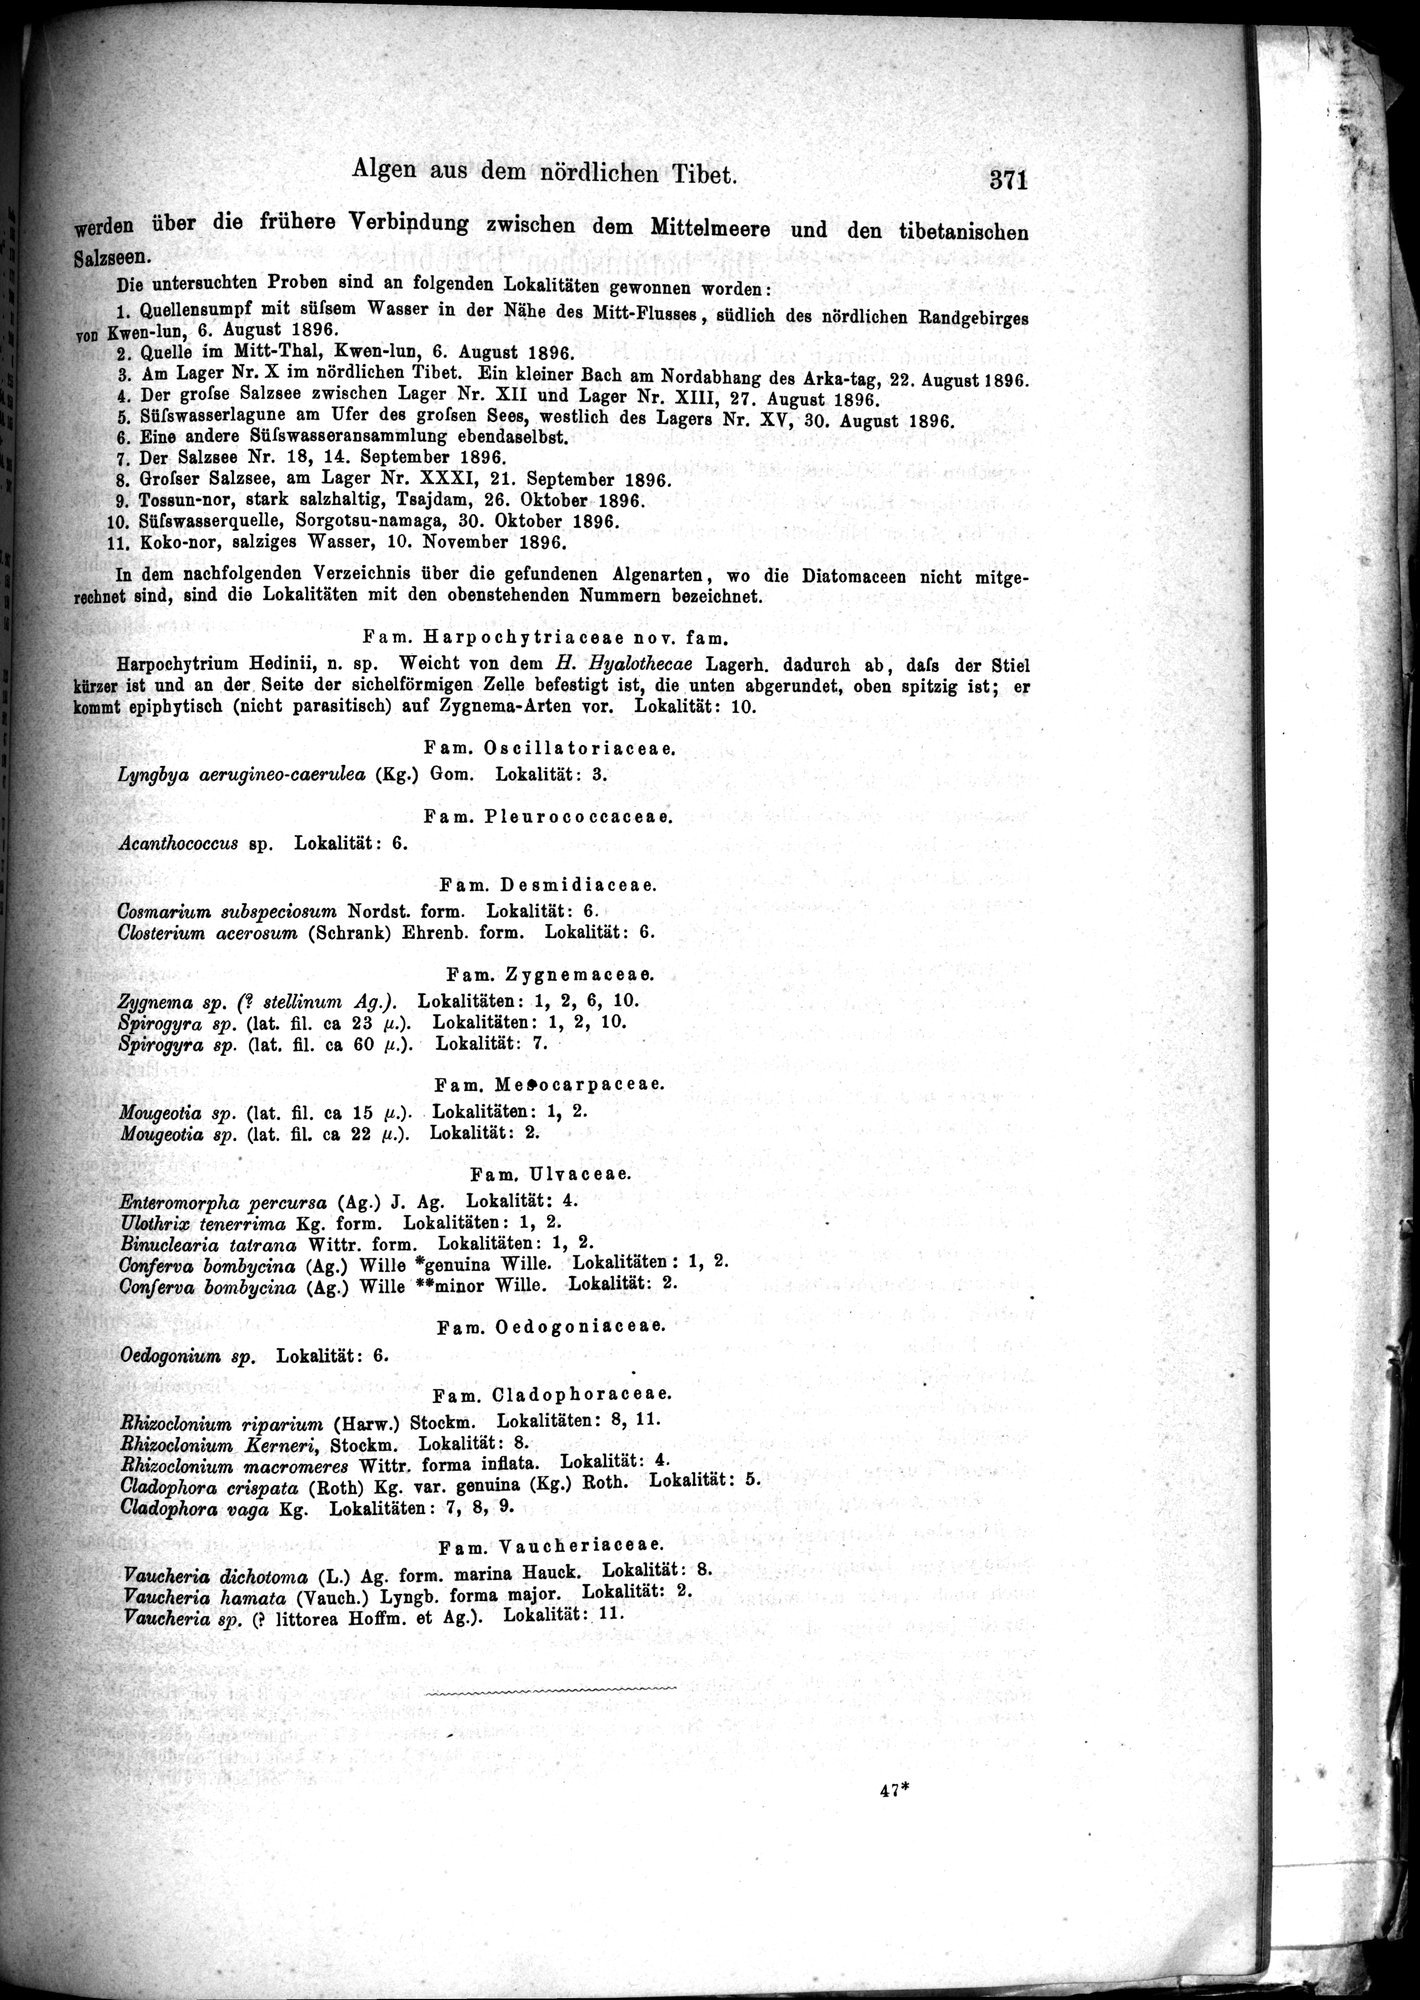 Die Geographische-Wissenschaftlichen Ergebnisse meiner Reisen in Zentralasien, 1894-1897 : vol.1 / Page 383 (Grayscale High Resolution Image)